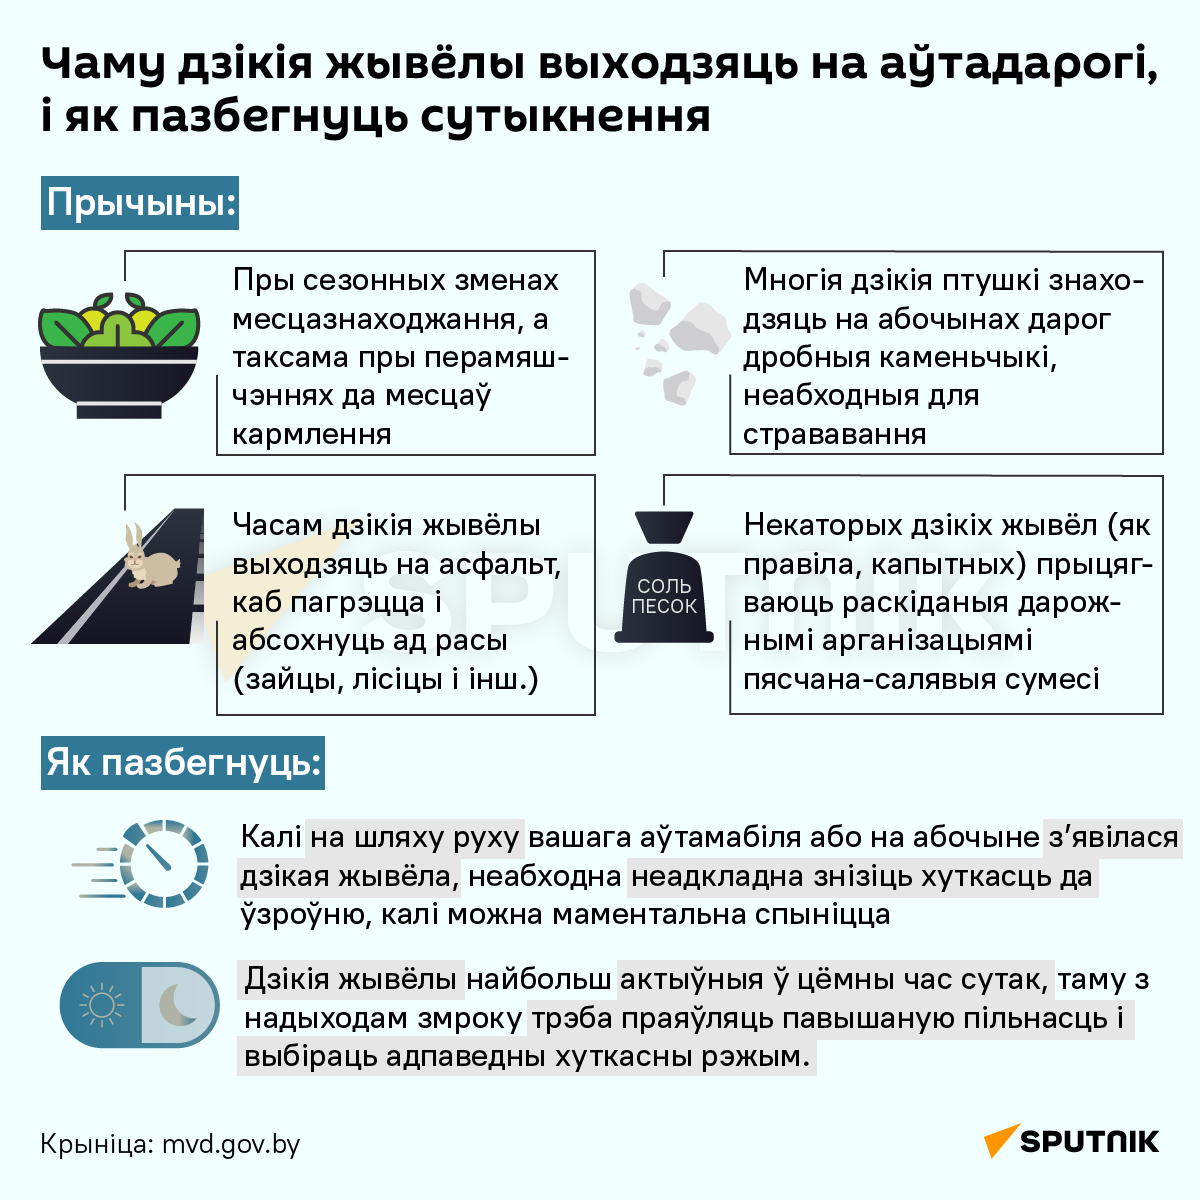 ДТЗ з дзікімі жывёламі: як іх пазбегнуць? - інфаграфіка 2 - Sputnik Беларусь